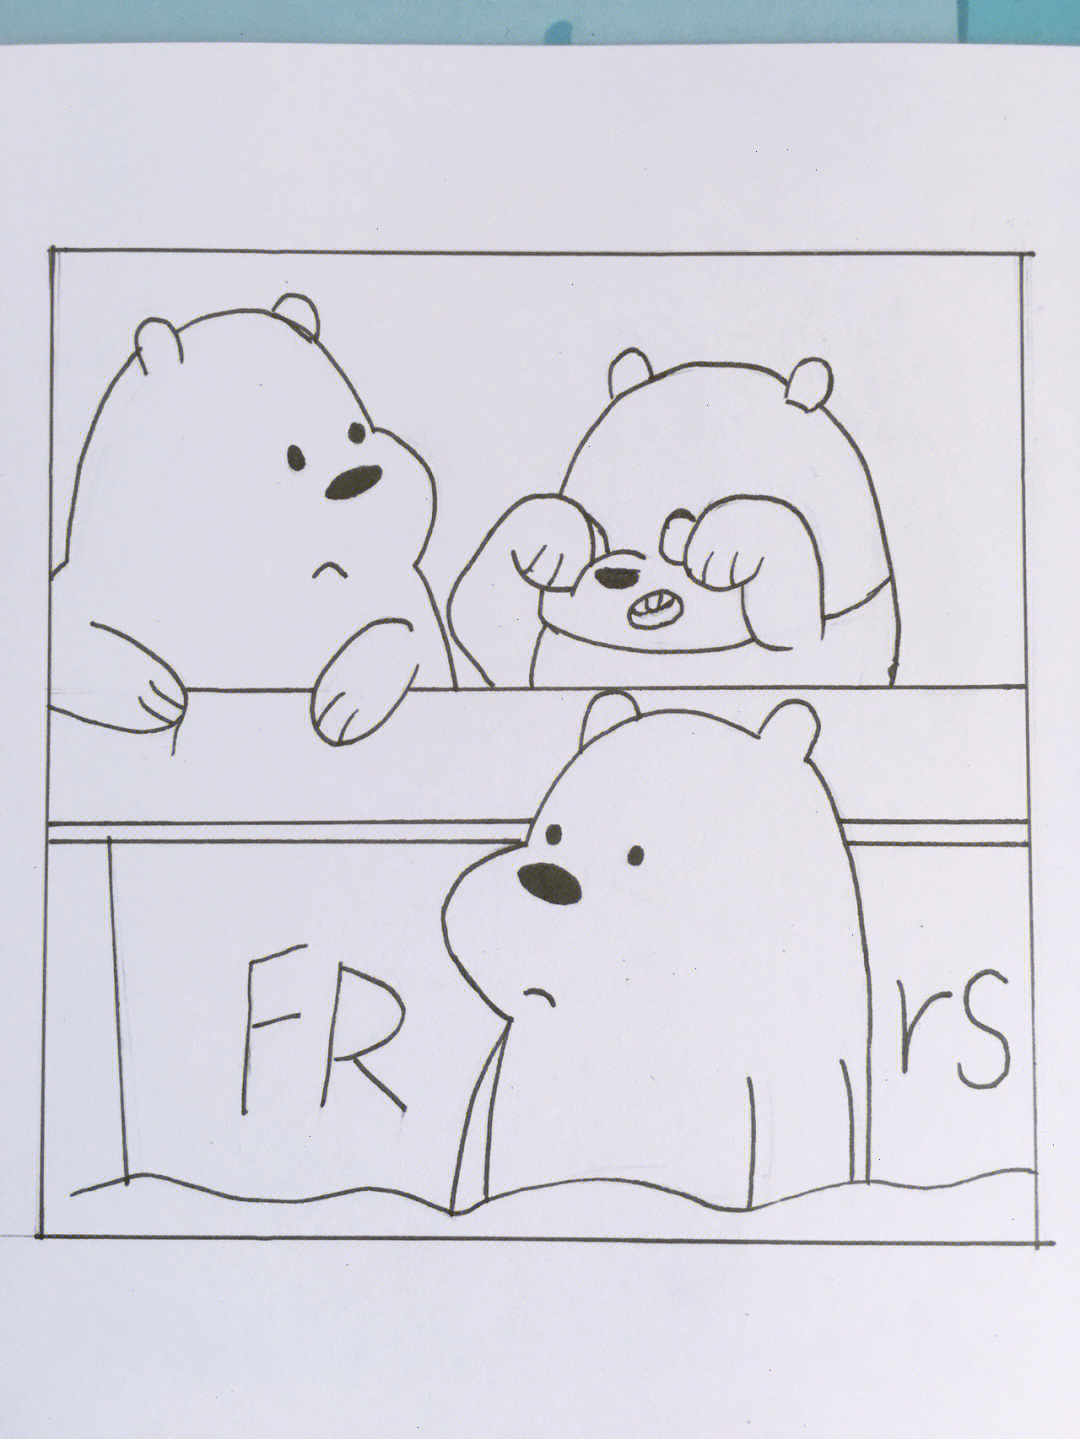 三只小熊简笔画创编图片